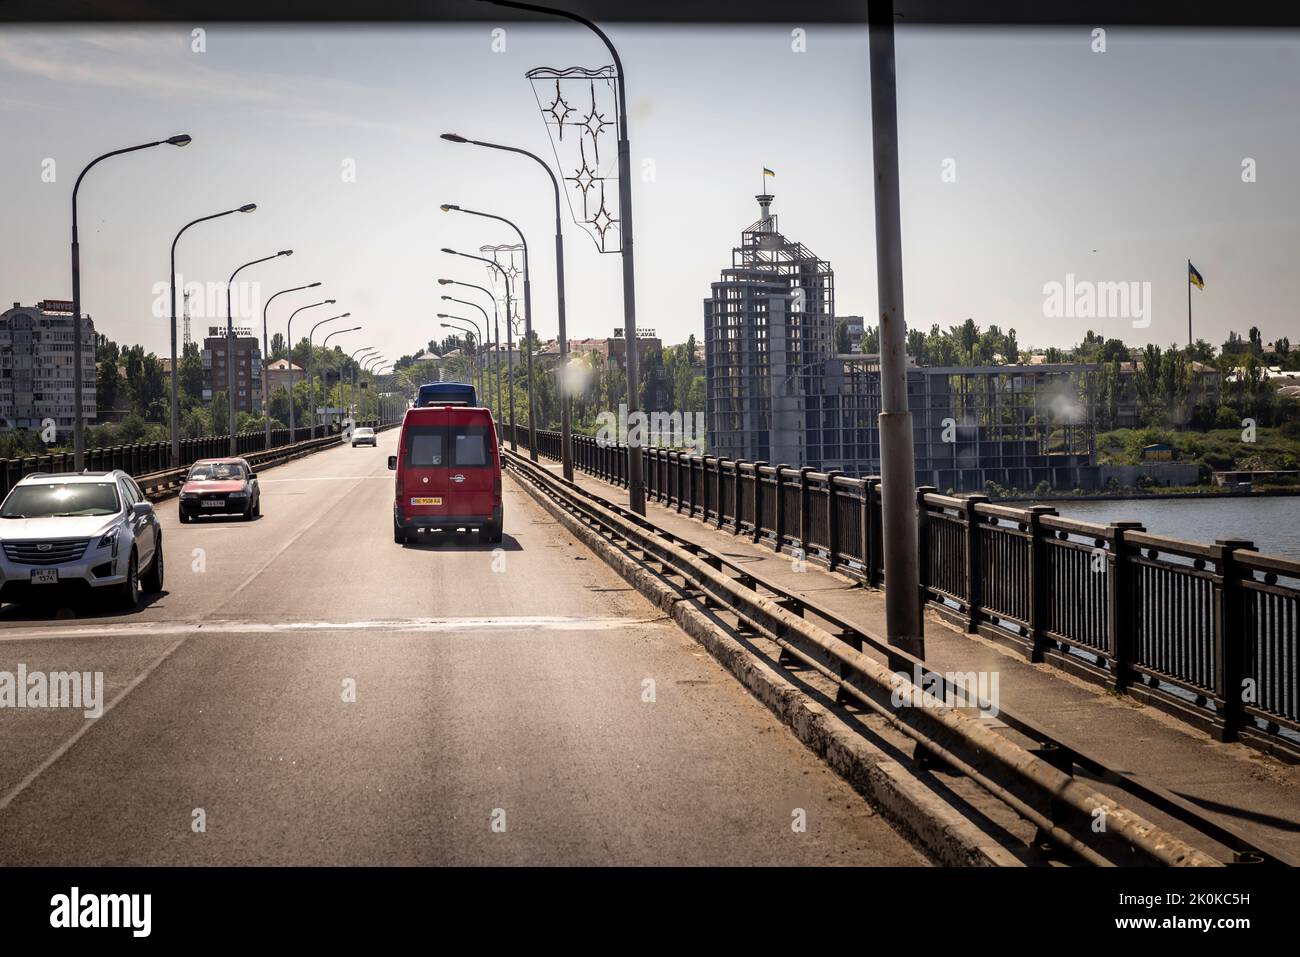 Auf der Brücke am Ortseingang nach Mykolajiw, welche immer wieder von russischen Angriffen getroffen wurde. Zwei Bussen fahren für die Evakuierung von rund 110 Flüchtenden in die Kampfzone im Oblast Mykolajiw. Die Flüchtenden werden zunächst nach Chisinau in Moldawien gebracht. Die Meisten wollen dann nach Deutschland weiterreisen. Stock Photo